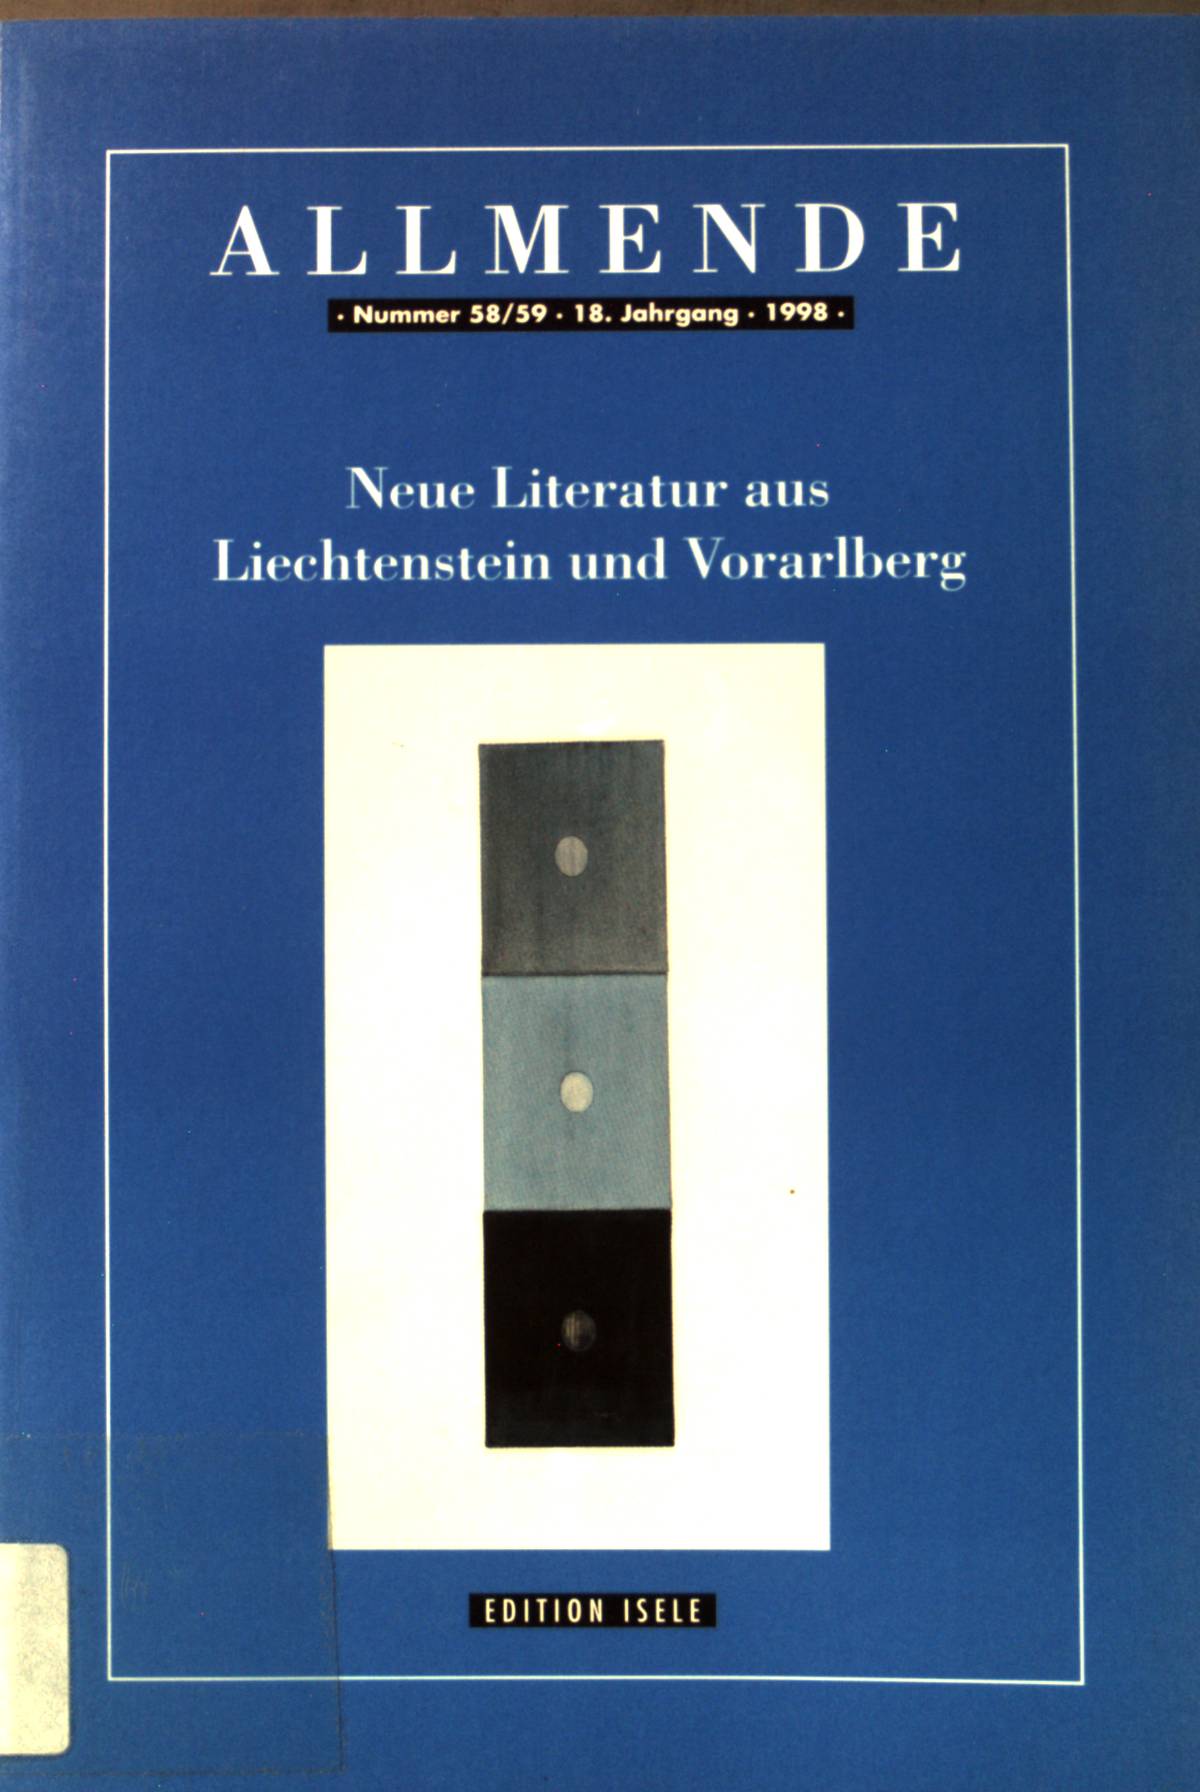 Neue Literatur aus Liechtenstein und Vorarlberg. Allmende ; Nr. 58/59. Jg. 18 - Bausinger, Hermann, Manfred Bosch Ulrike Längle u. a.